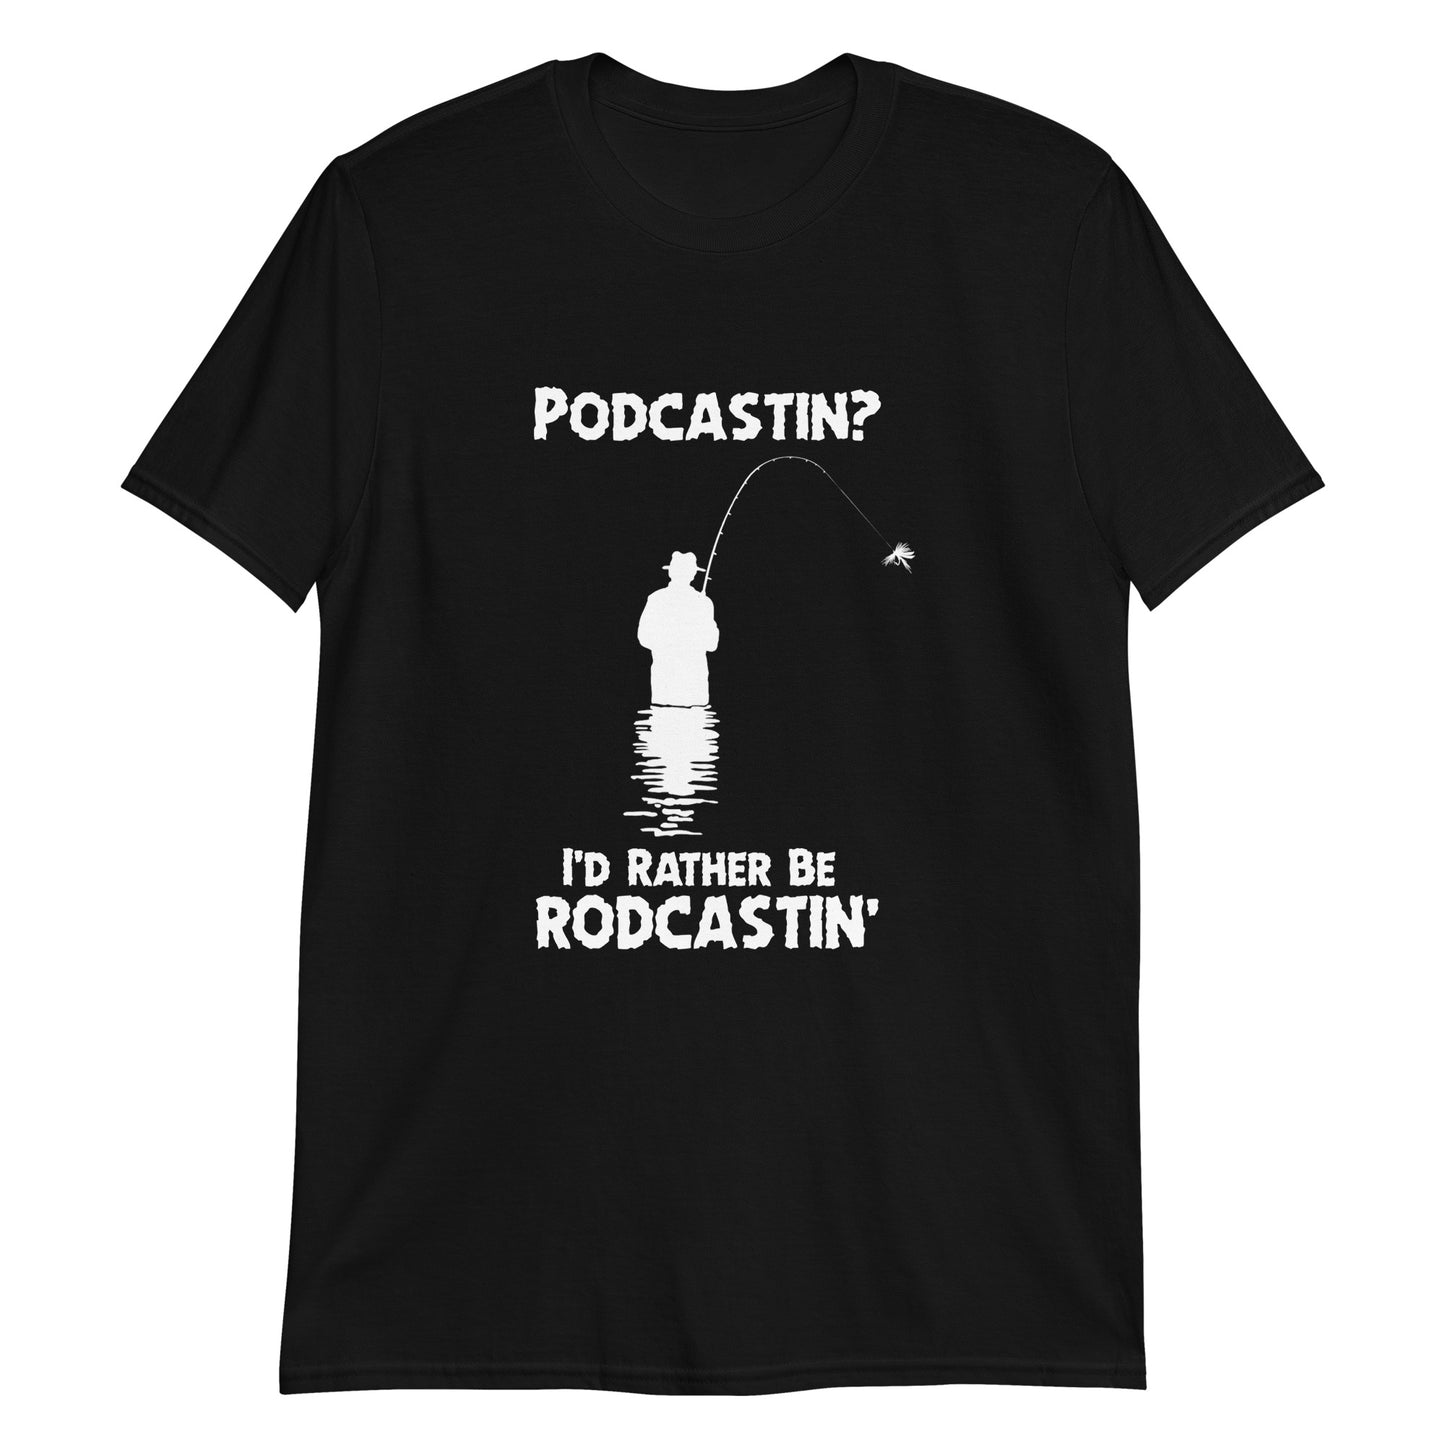 Podcastin? I'd rather be rodcastin'